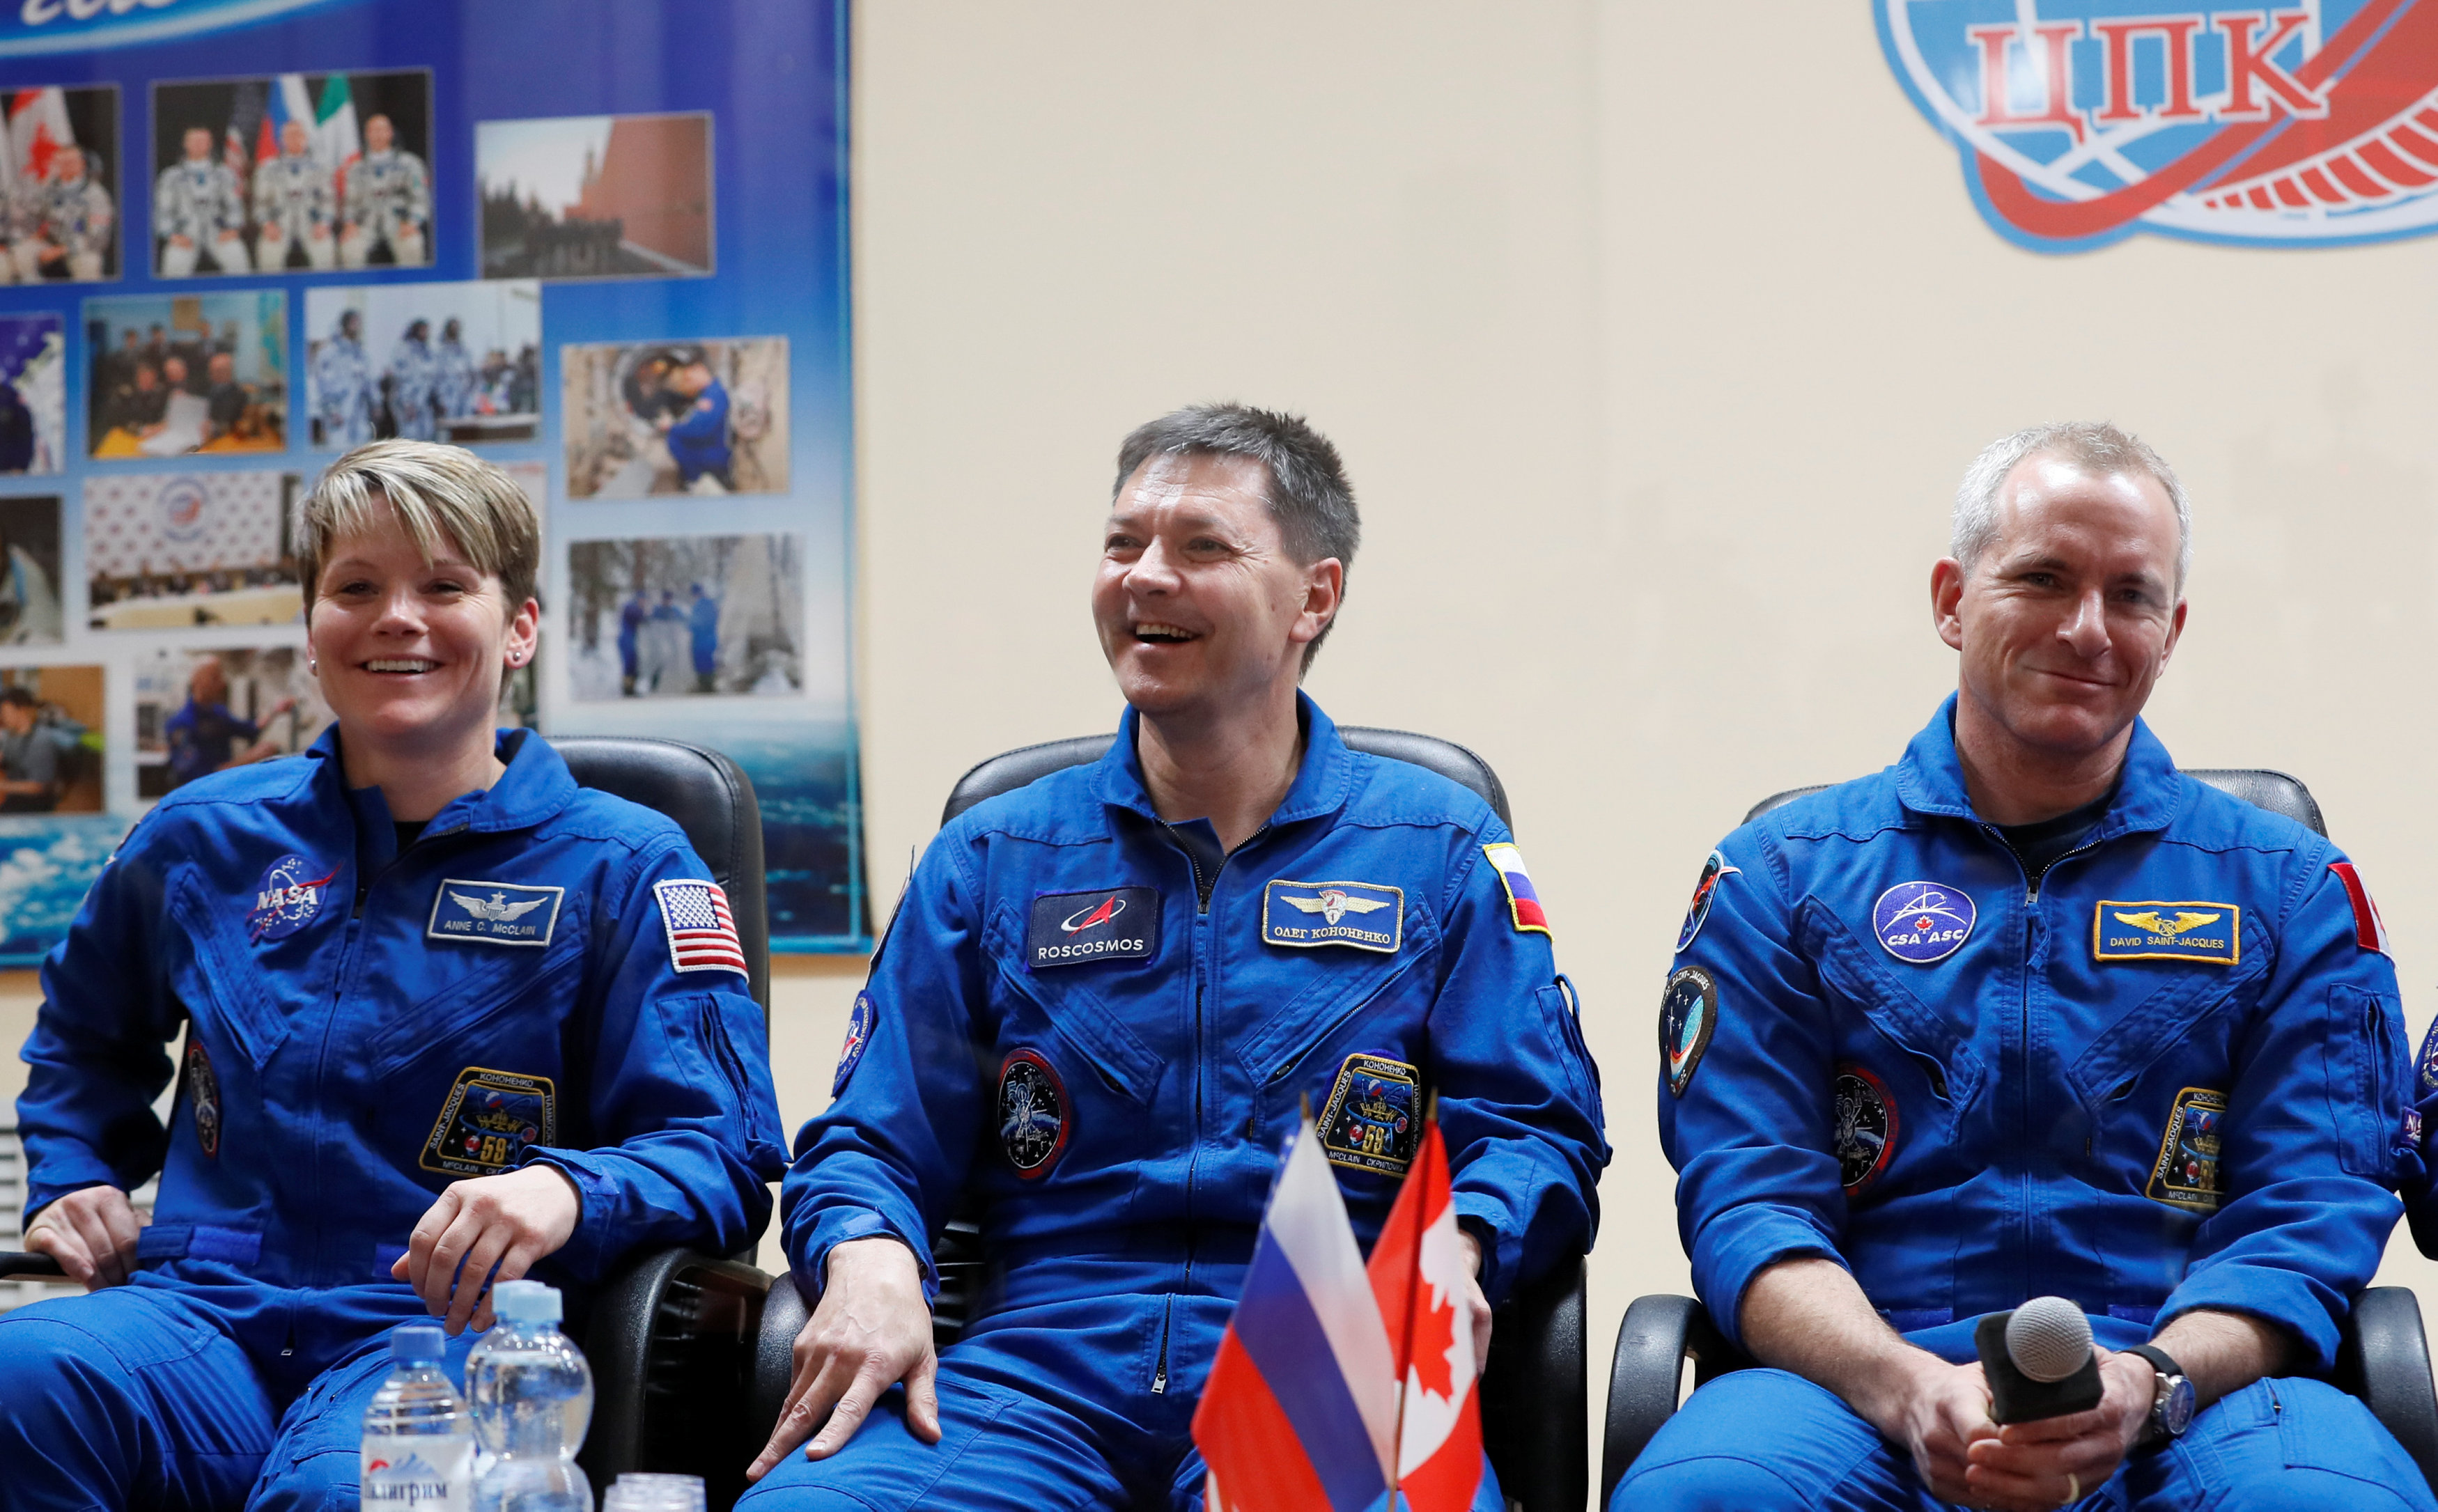 Los astronautas se muestran “confiados” ante primer vuelo tras accidente del Soyuz